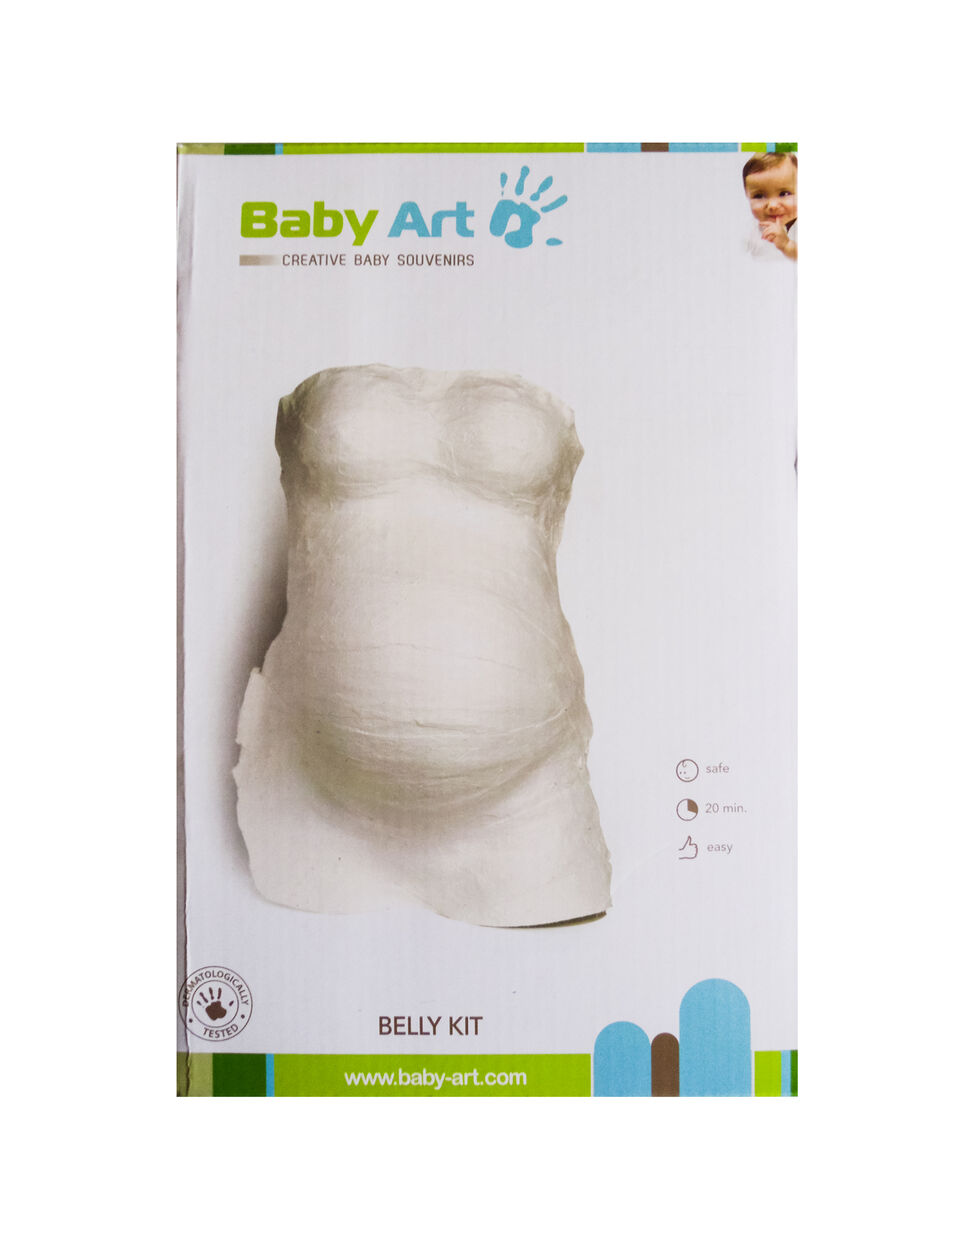 Belly Kit Baby Art